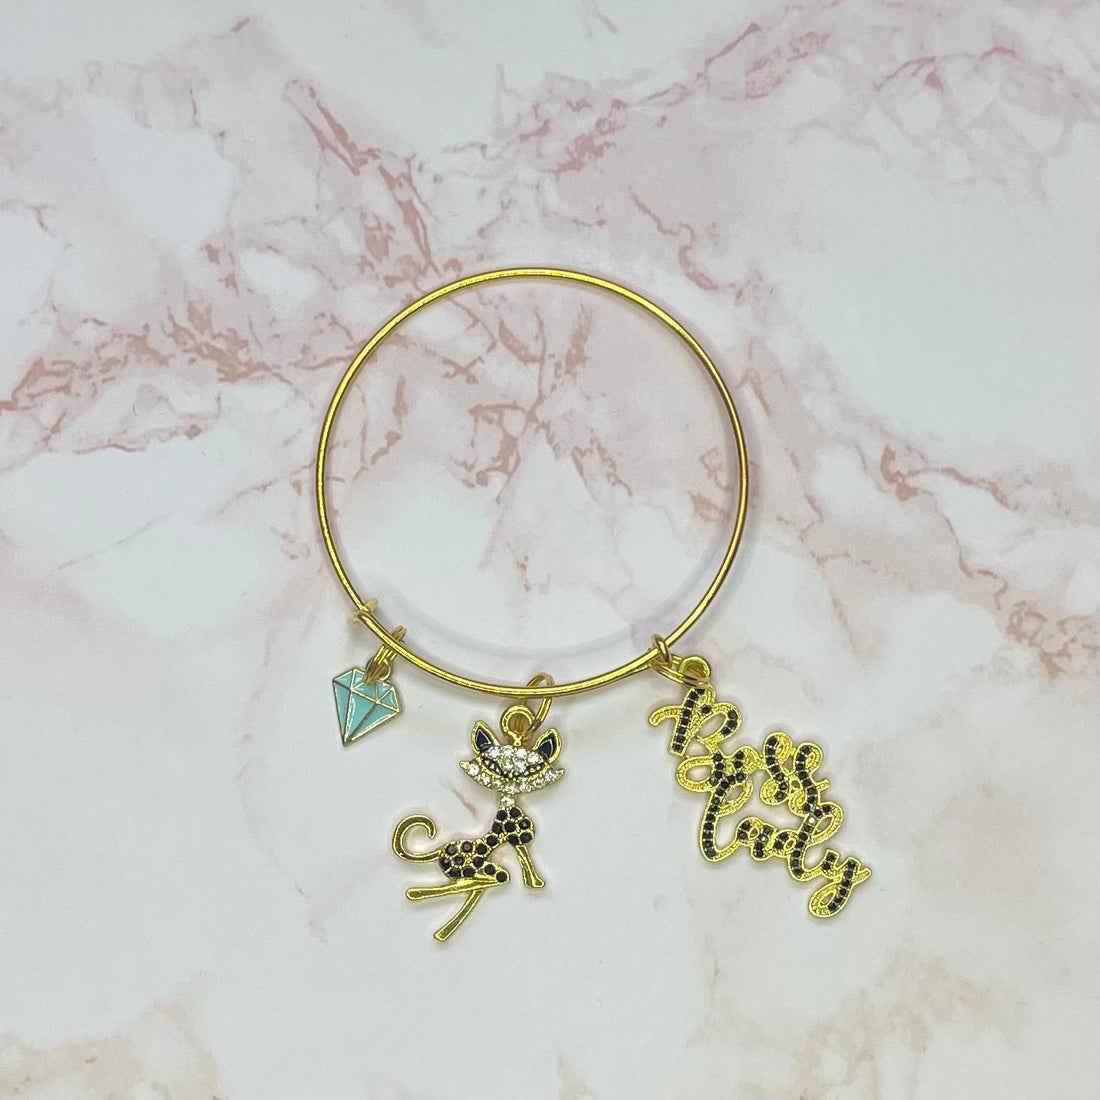 Kitty Gold Bangle Bracelet Charms By Prince™